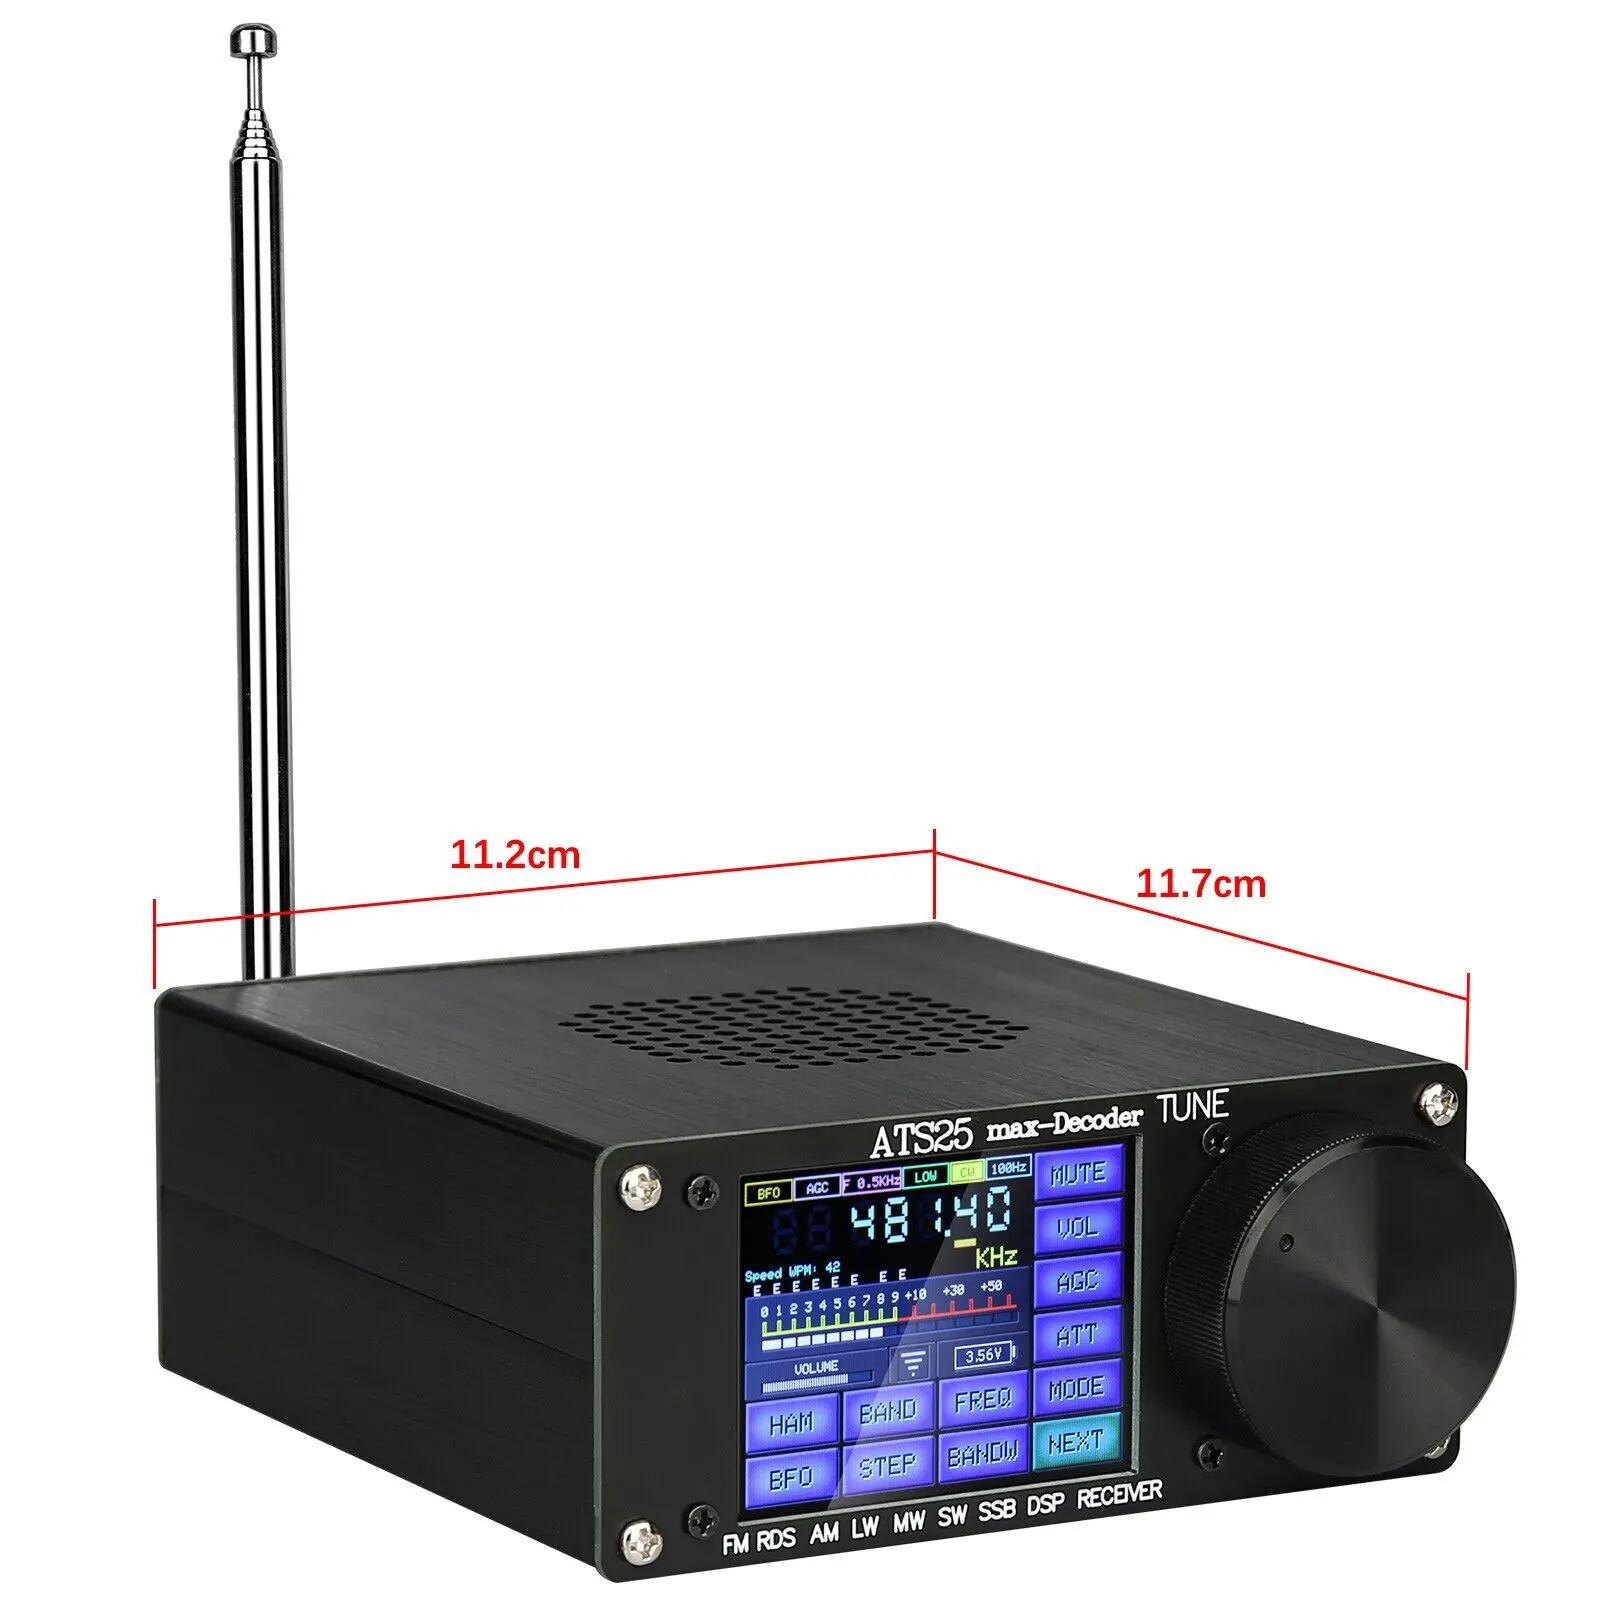 HamGeek 4.17 oficjalny zarejestrowany kod ATS25Max-Decoder Si4732 pełny odbiornik radiowy FM RDS AM LW MW SW SSB DSP ATS25 Max